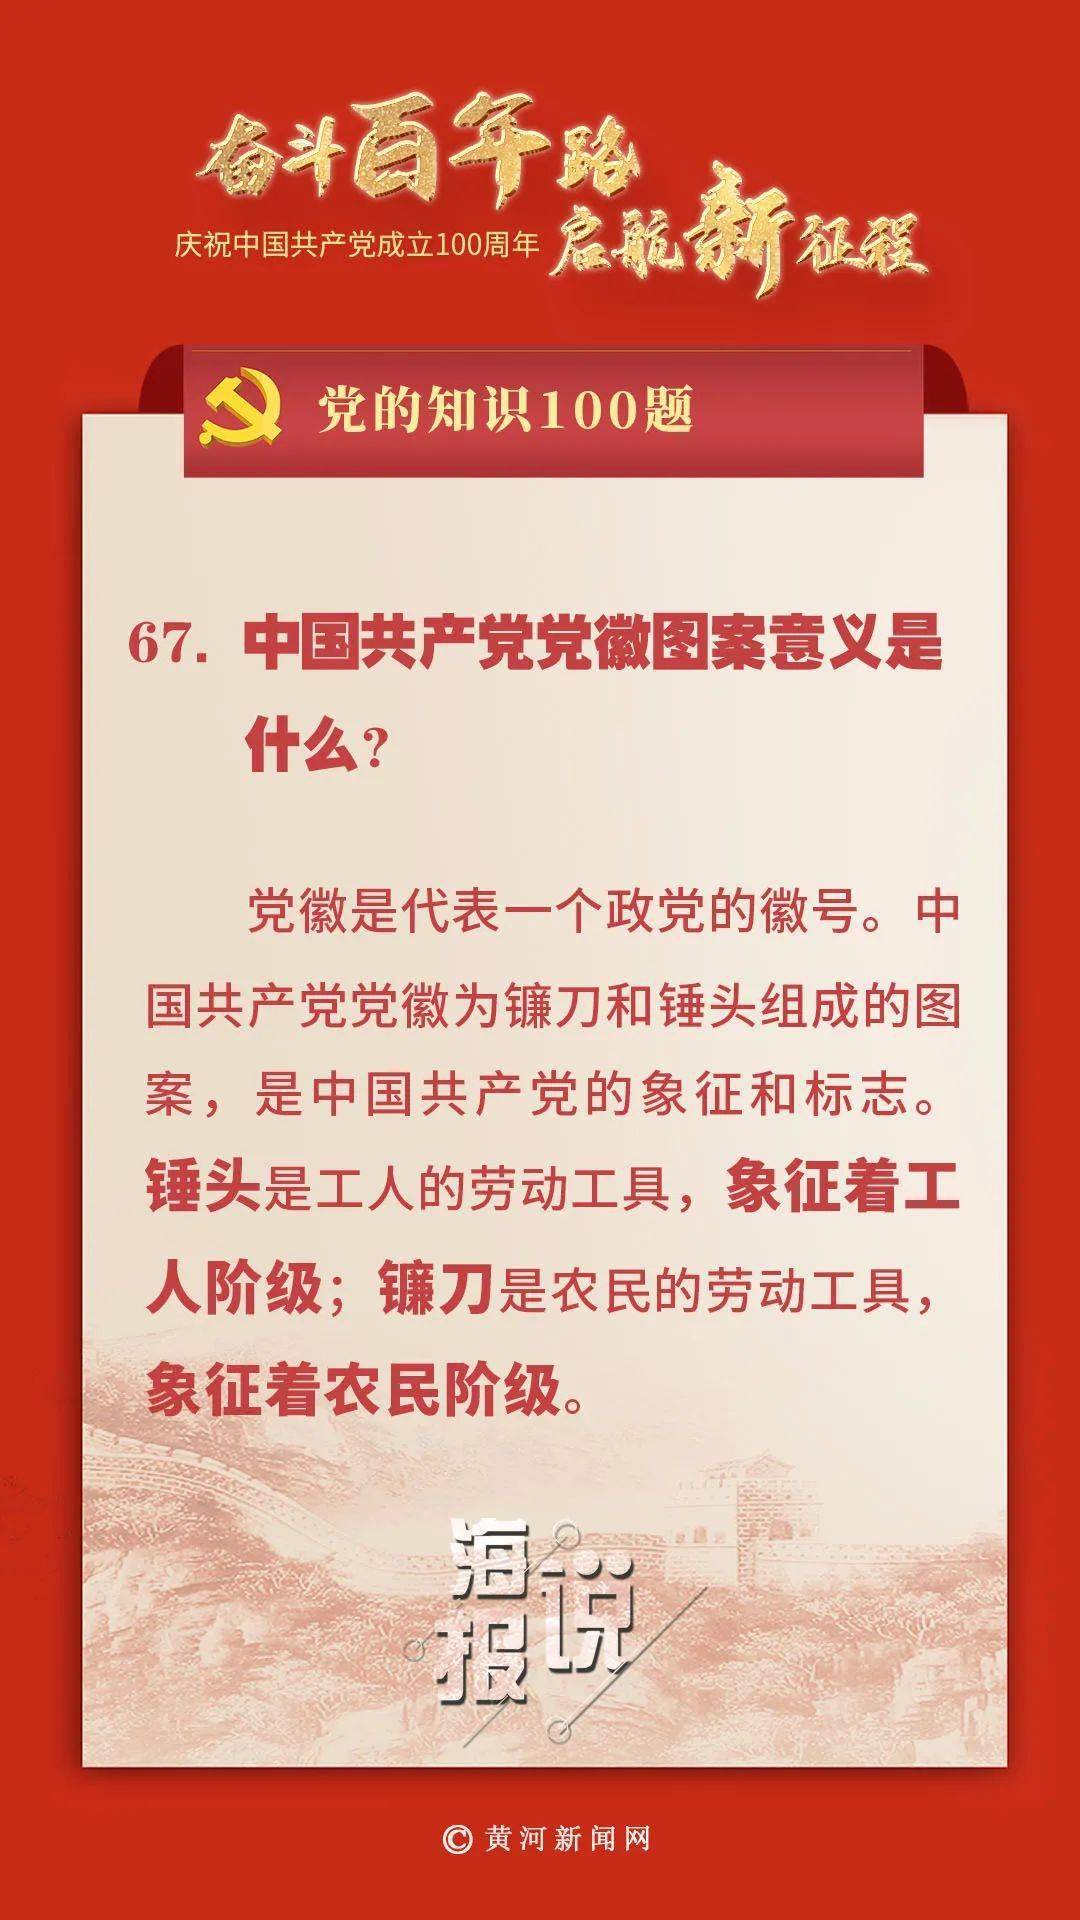 题】│ 中国共产党党徽图案意义是什么?